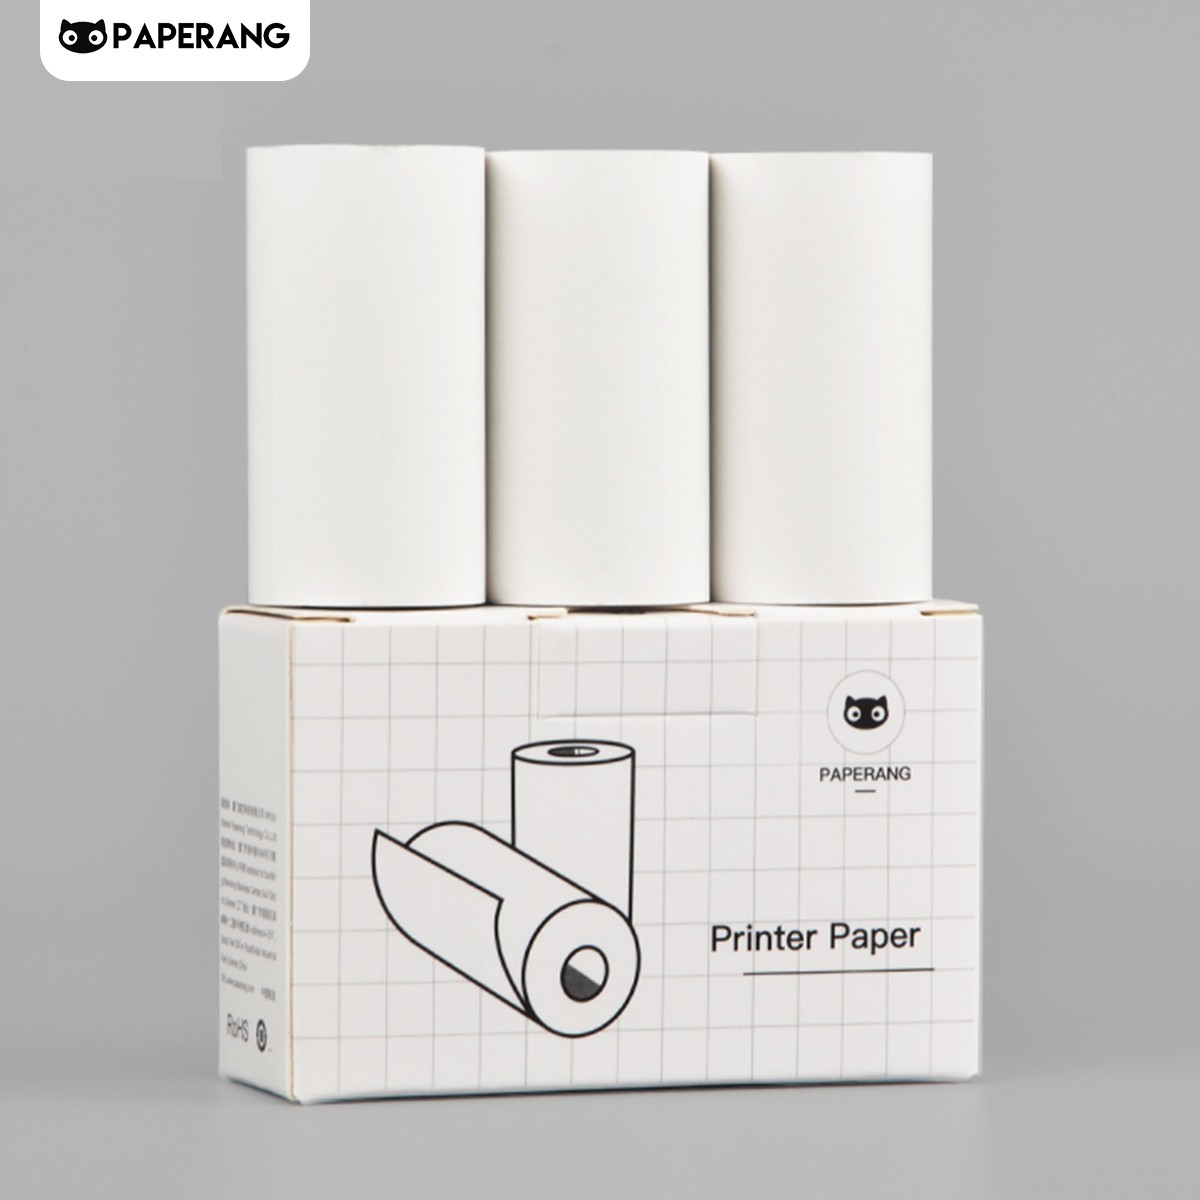 Hộp 3 cuộn giấy in nhiệt Paperang các loại dành cho máy in mini Paperang P1, P2 - Hàng chính hãng 100%